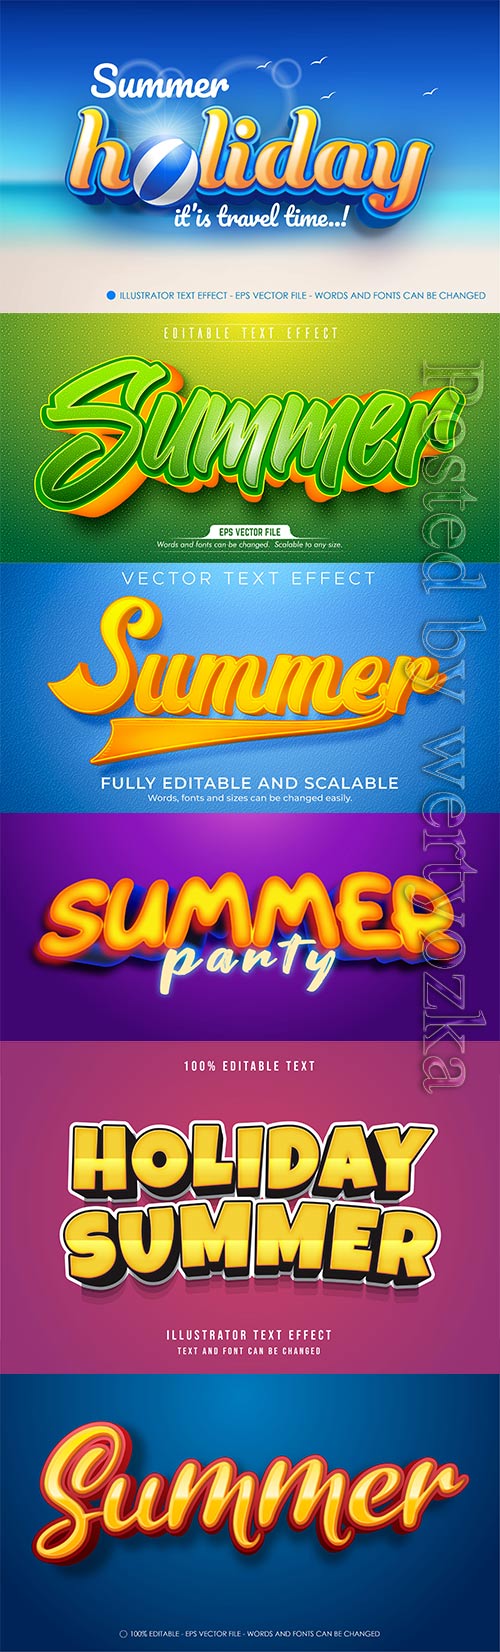 Summer vector text, cartoon style editable text effect